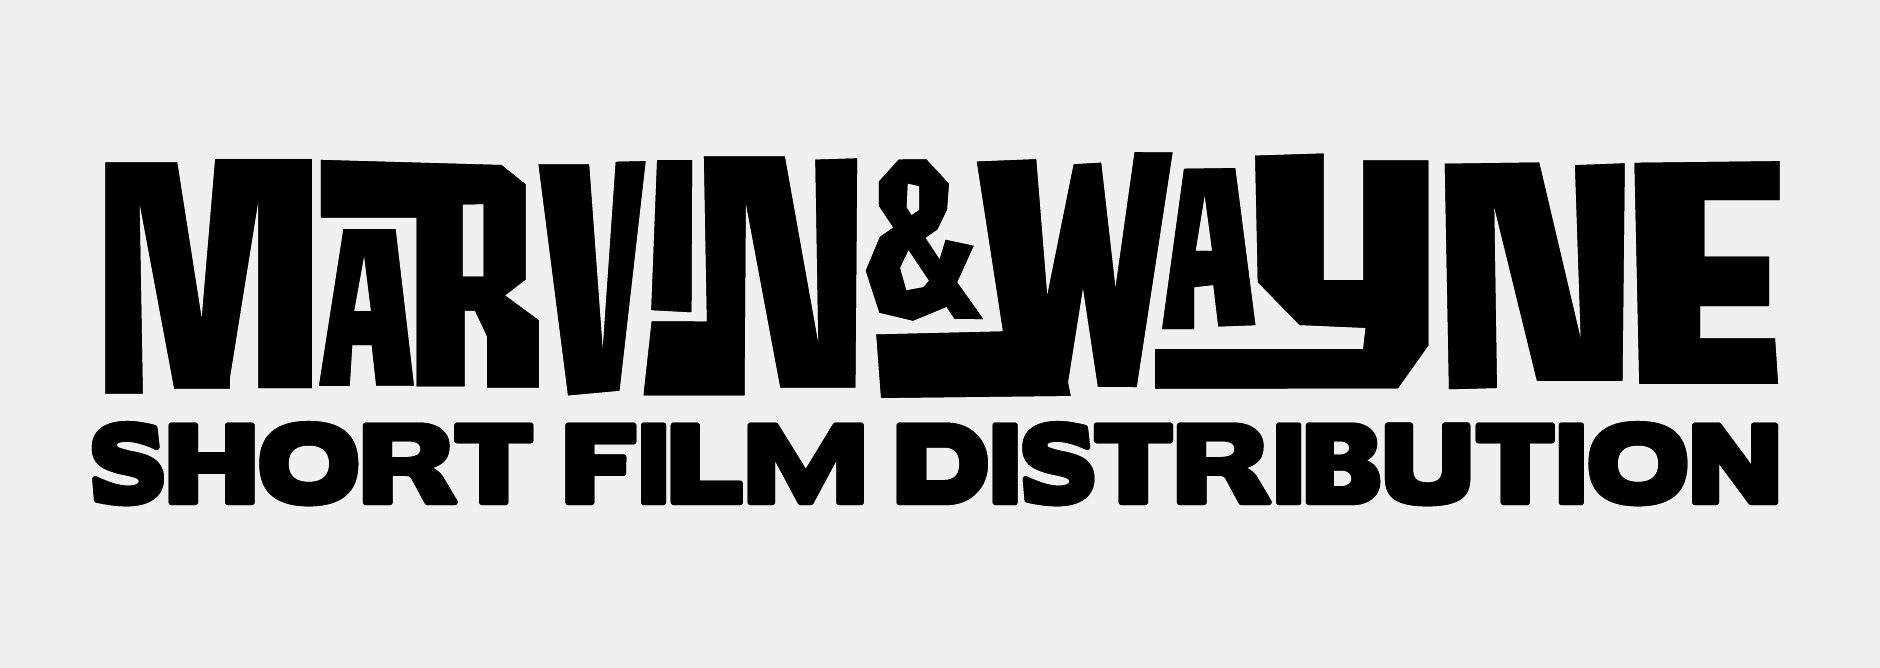 MarvinWayne-logo_creditos